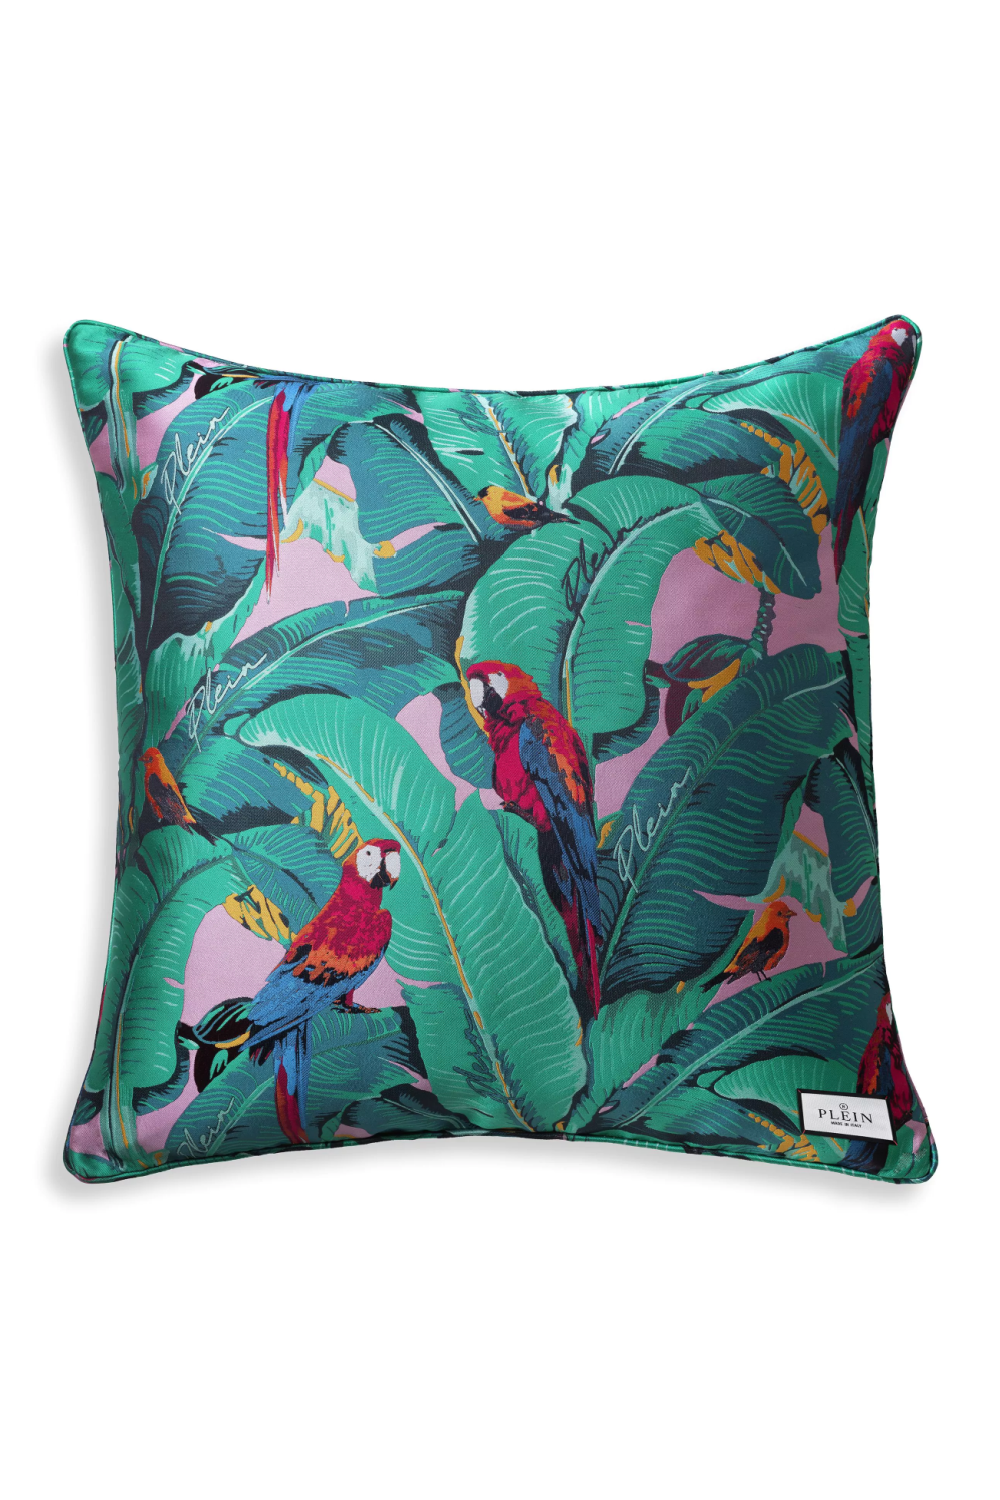 Wildlife Design Jacquard Cushion M Philipp Plein Parrot Philipp Plein Home Collection - OROA